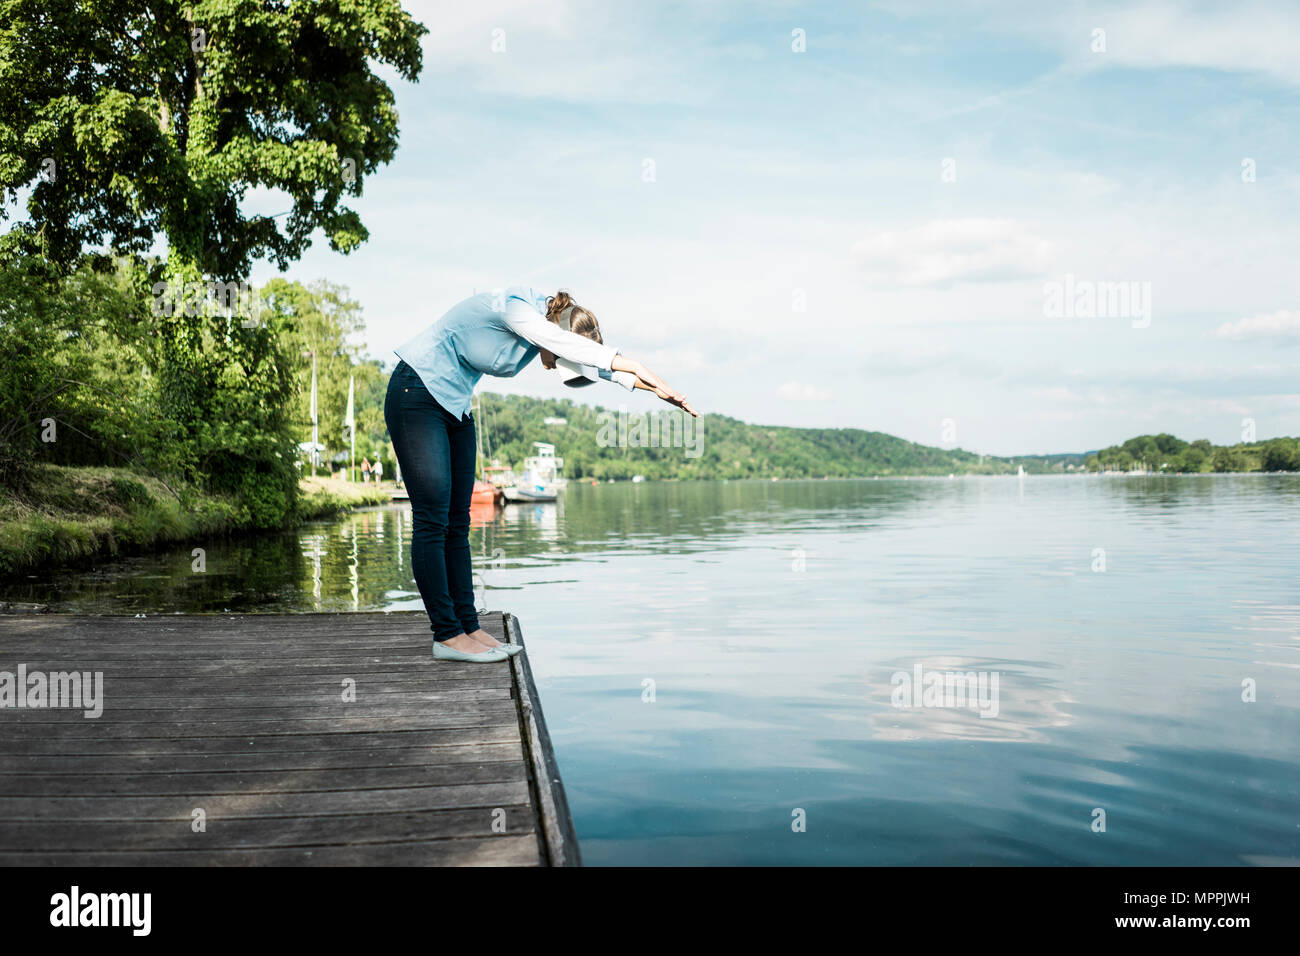 Frau auf Jetty VR-Brille vorgibt, tauchen Sie ein in einen See Stockfoto